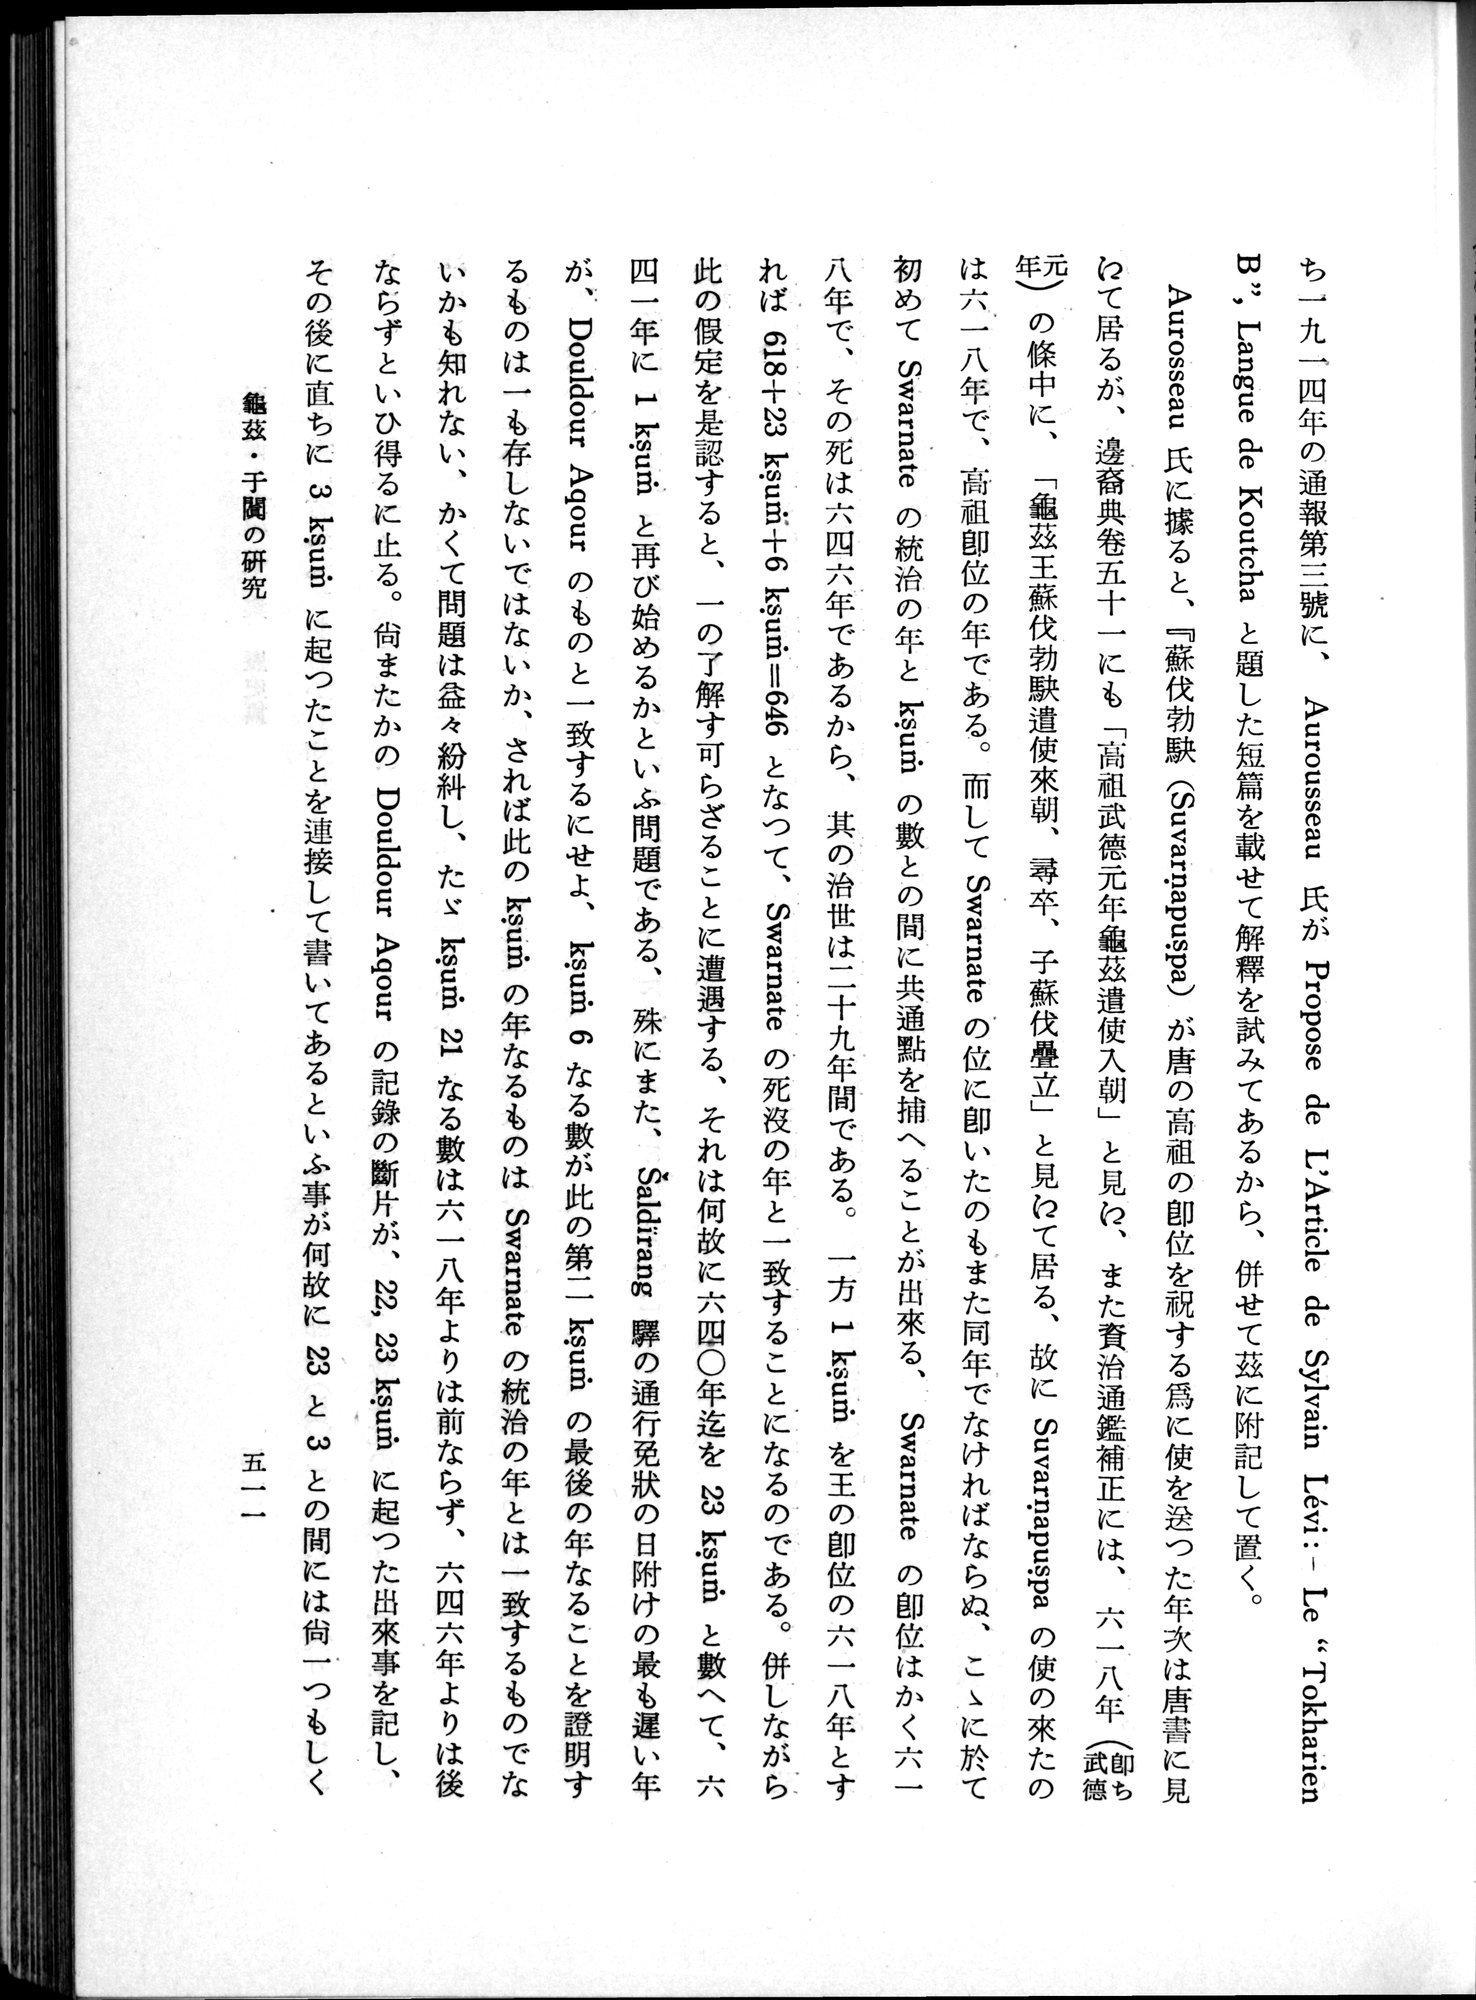 羽田博士史学論文集 : vol.1 / Page 549 (Grayscale High Resolution Image)